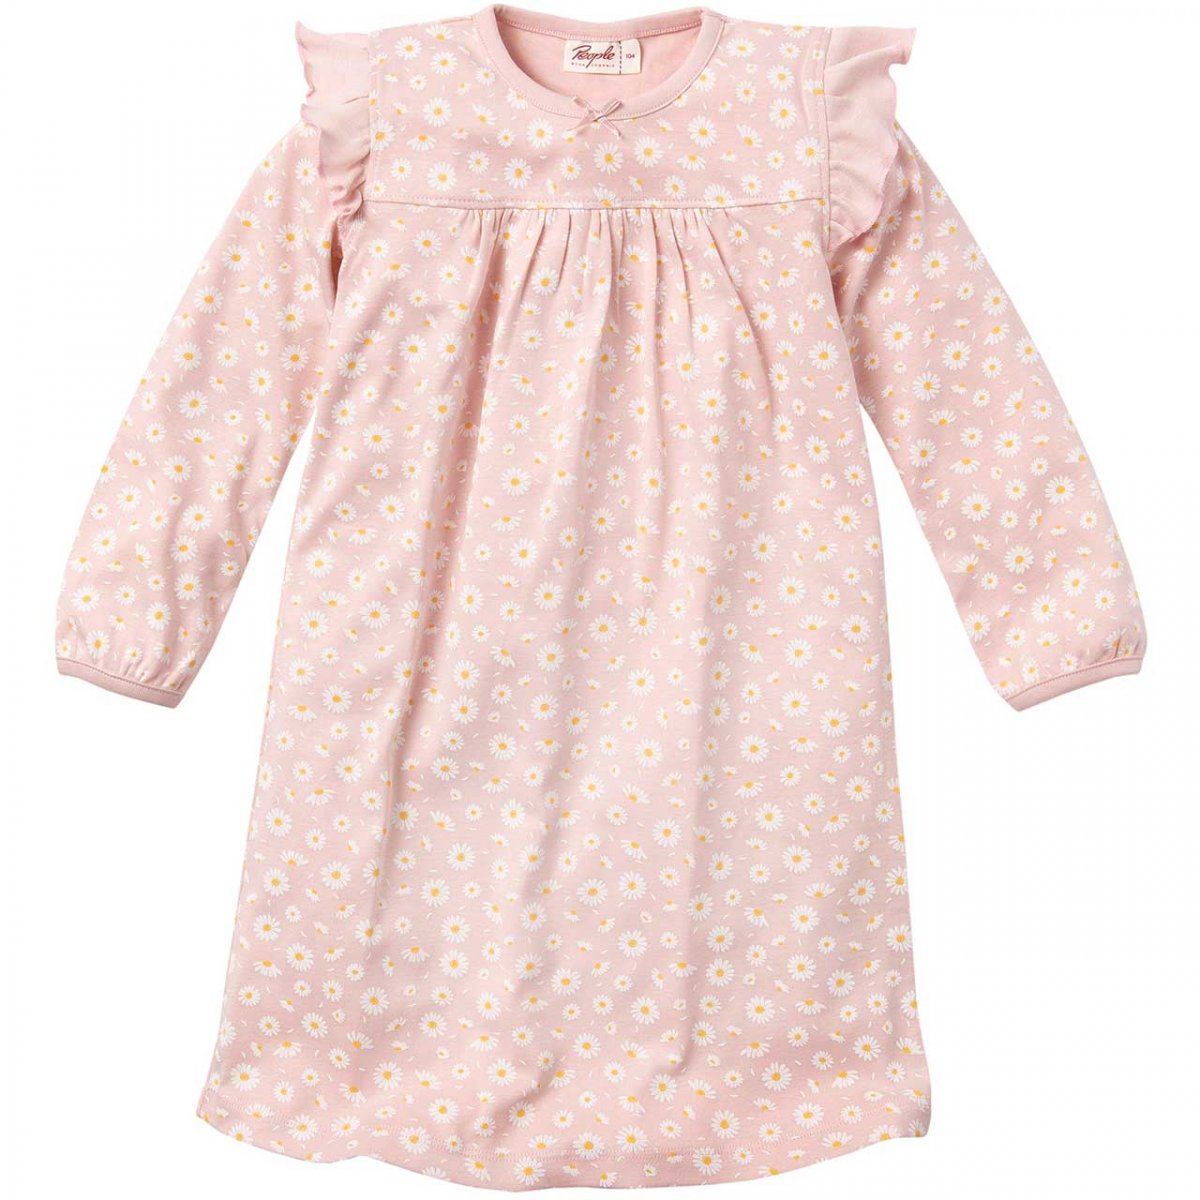 Camicia da notte Margherite per bambina in puro cotone biologico